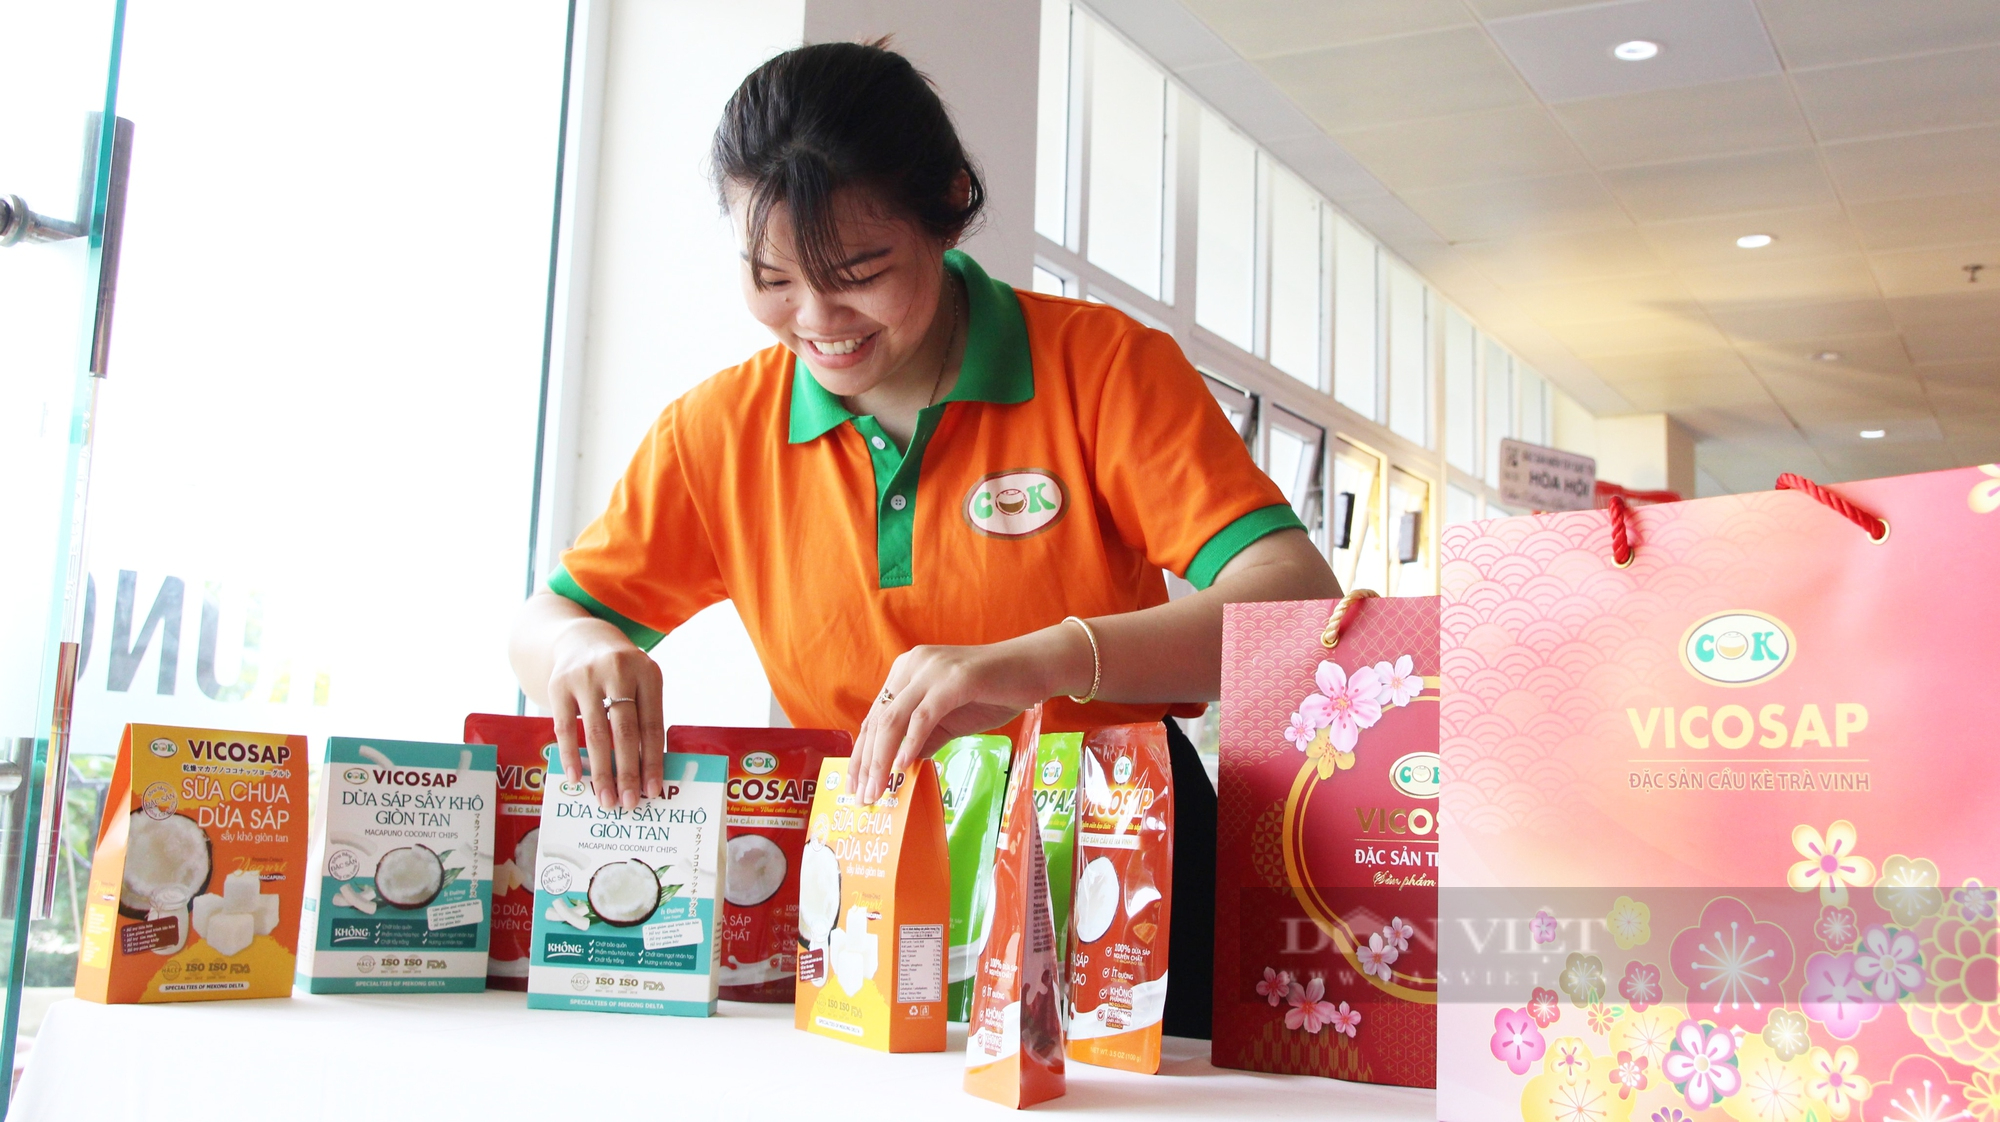 Chủ tịch tỉnh Trà Vinh: Vicosap là doanh nghiệp đầu tiên chế biến sâu trái dừa sáp với đa dạng sản phẩm - Ảnh 3.